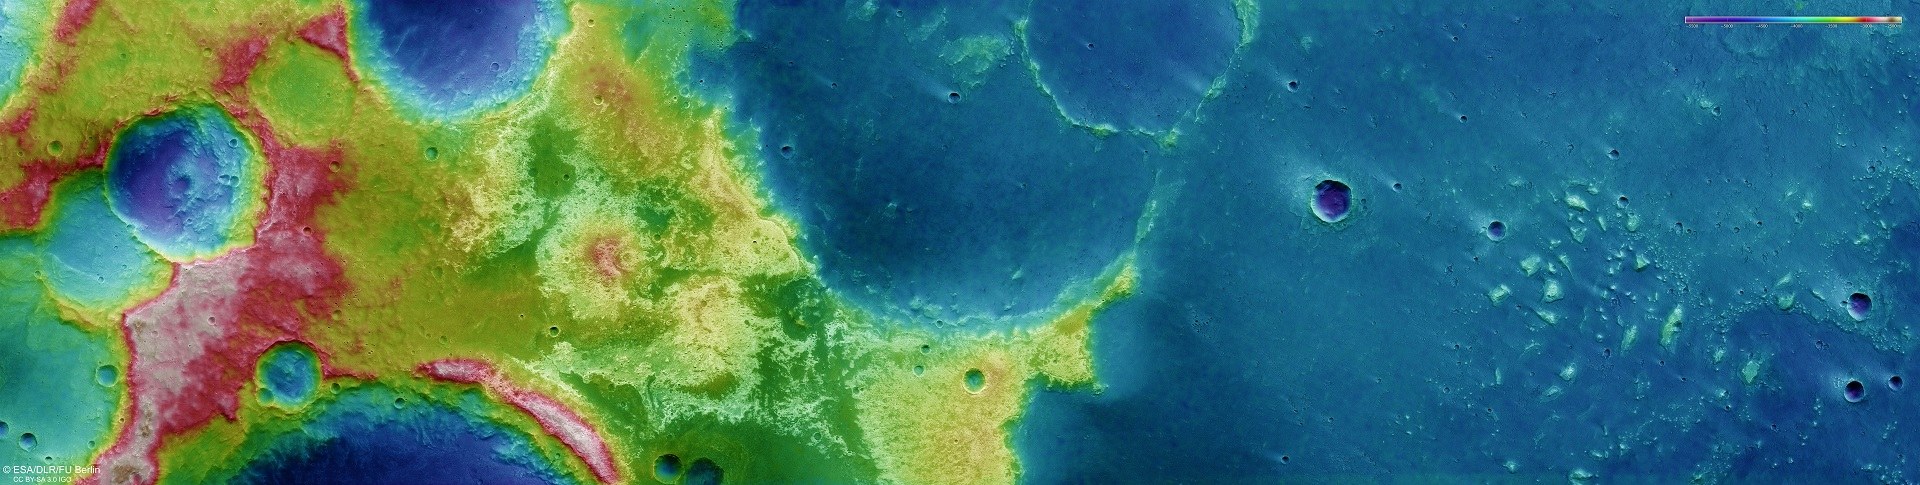 Topographische Bildkarte der Region Mawrth Vallis